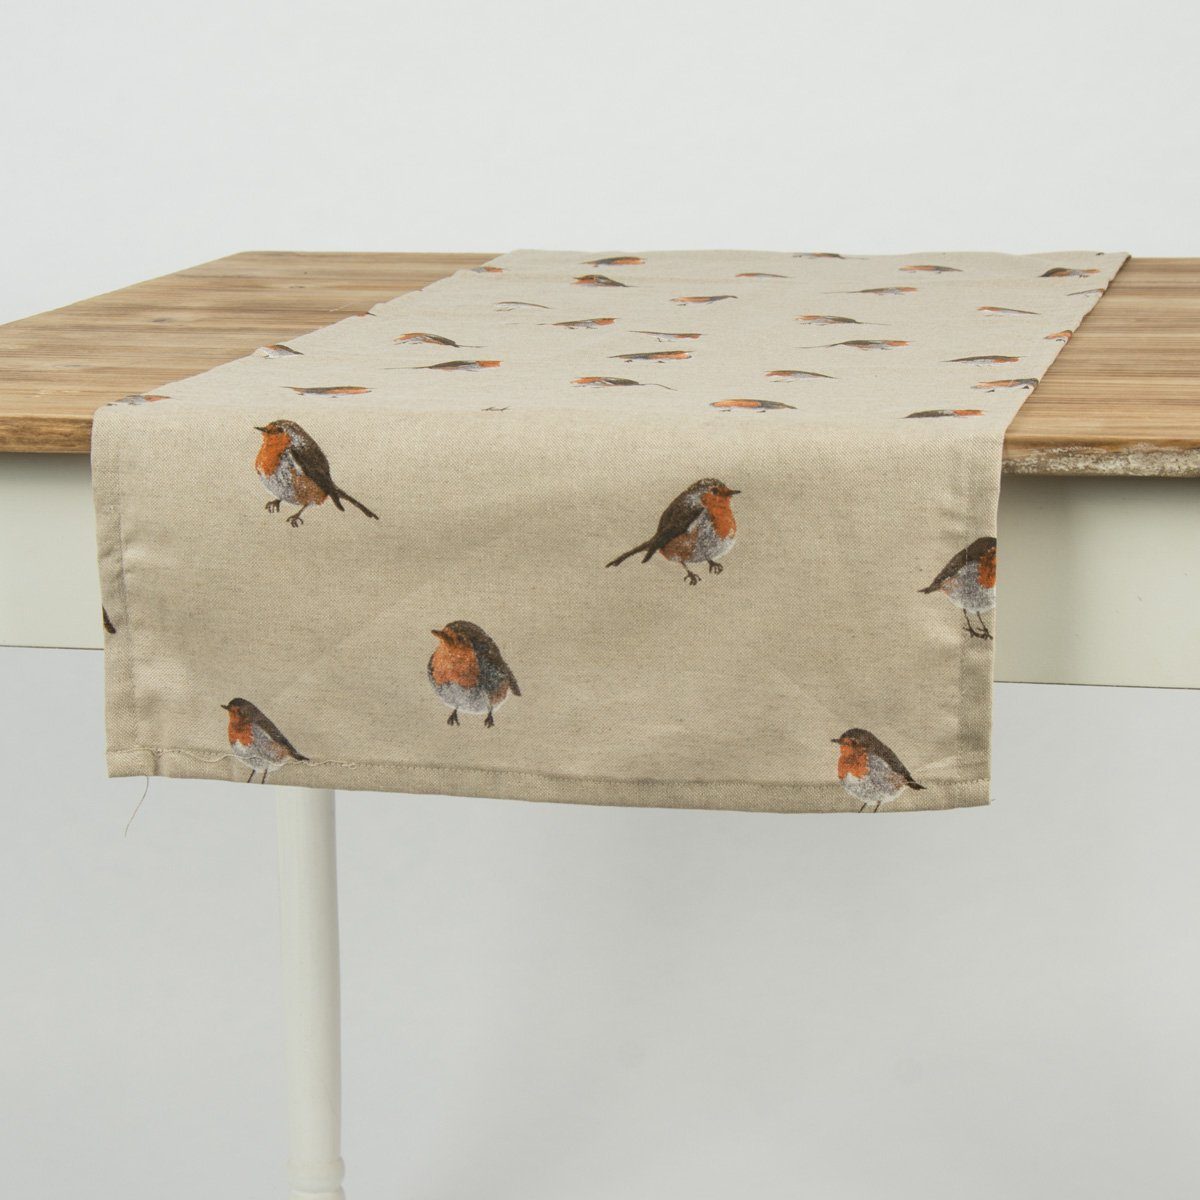 SCHÖNER LEBEN. handmade Schöner Vogel Tischläufer Rotkehlchen Leben natur Tischläufer braun 40x160cm